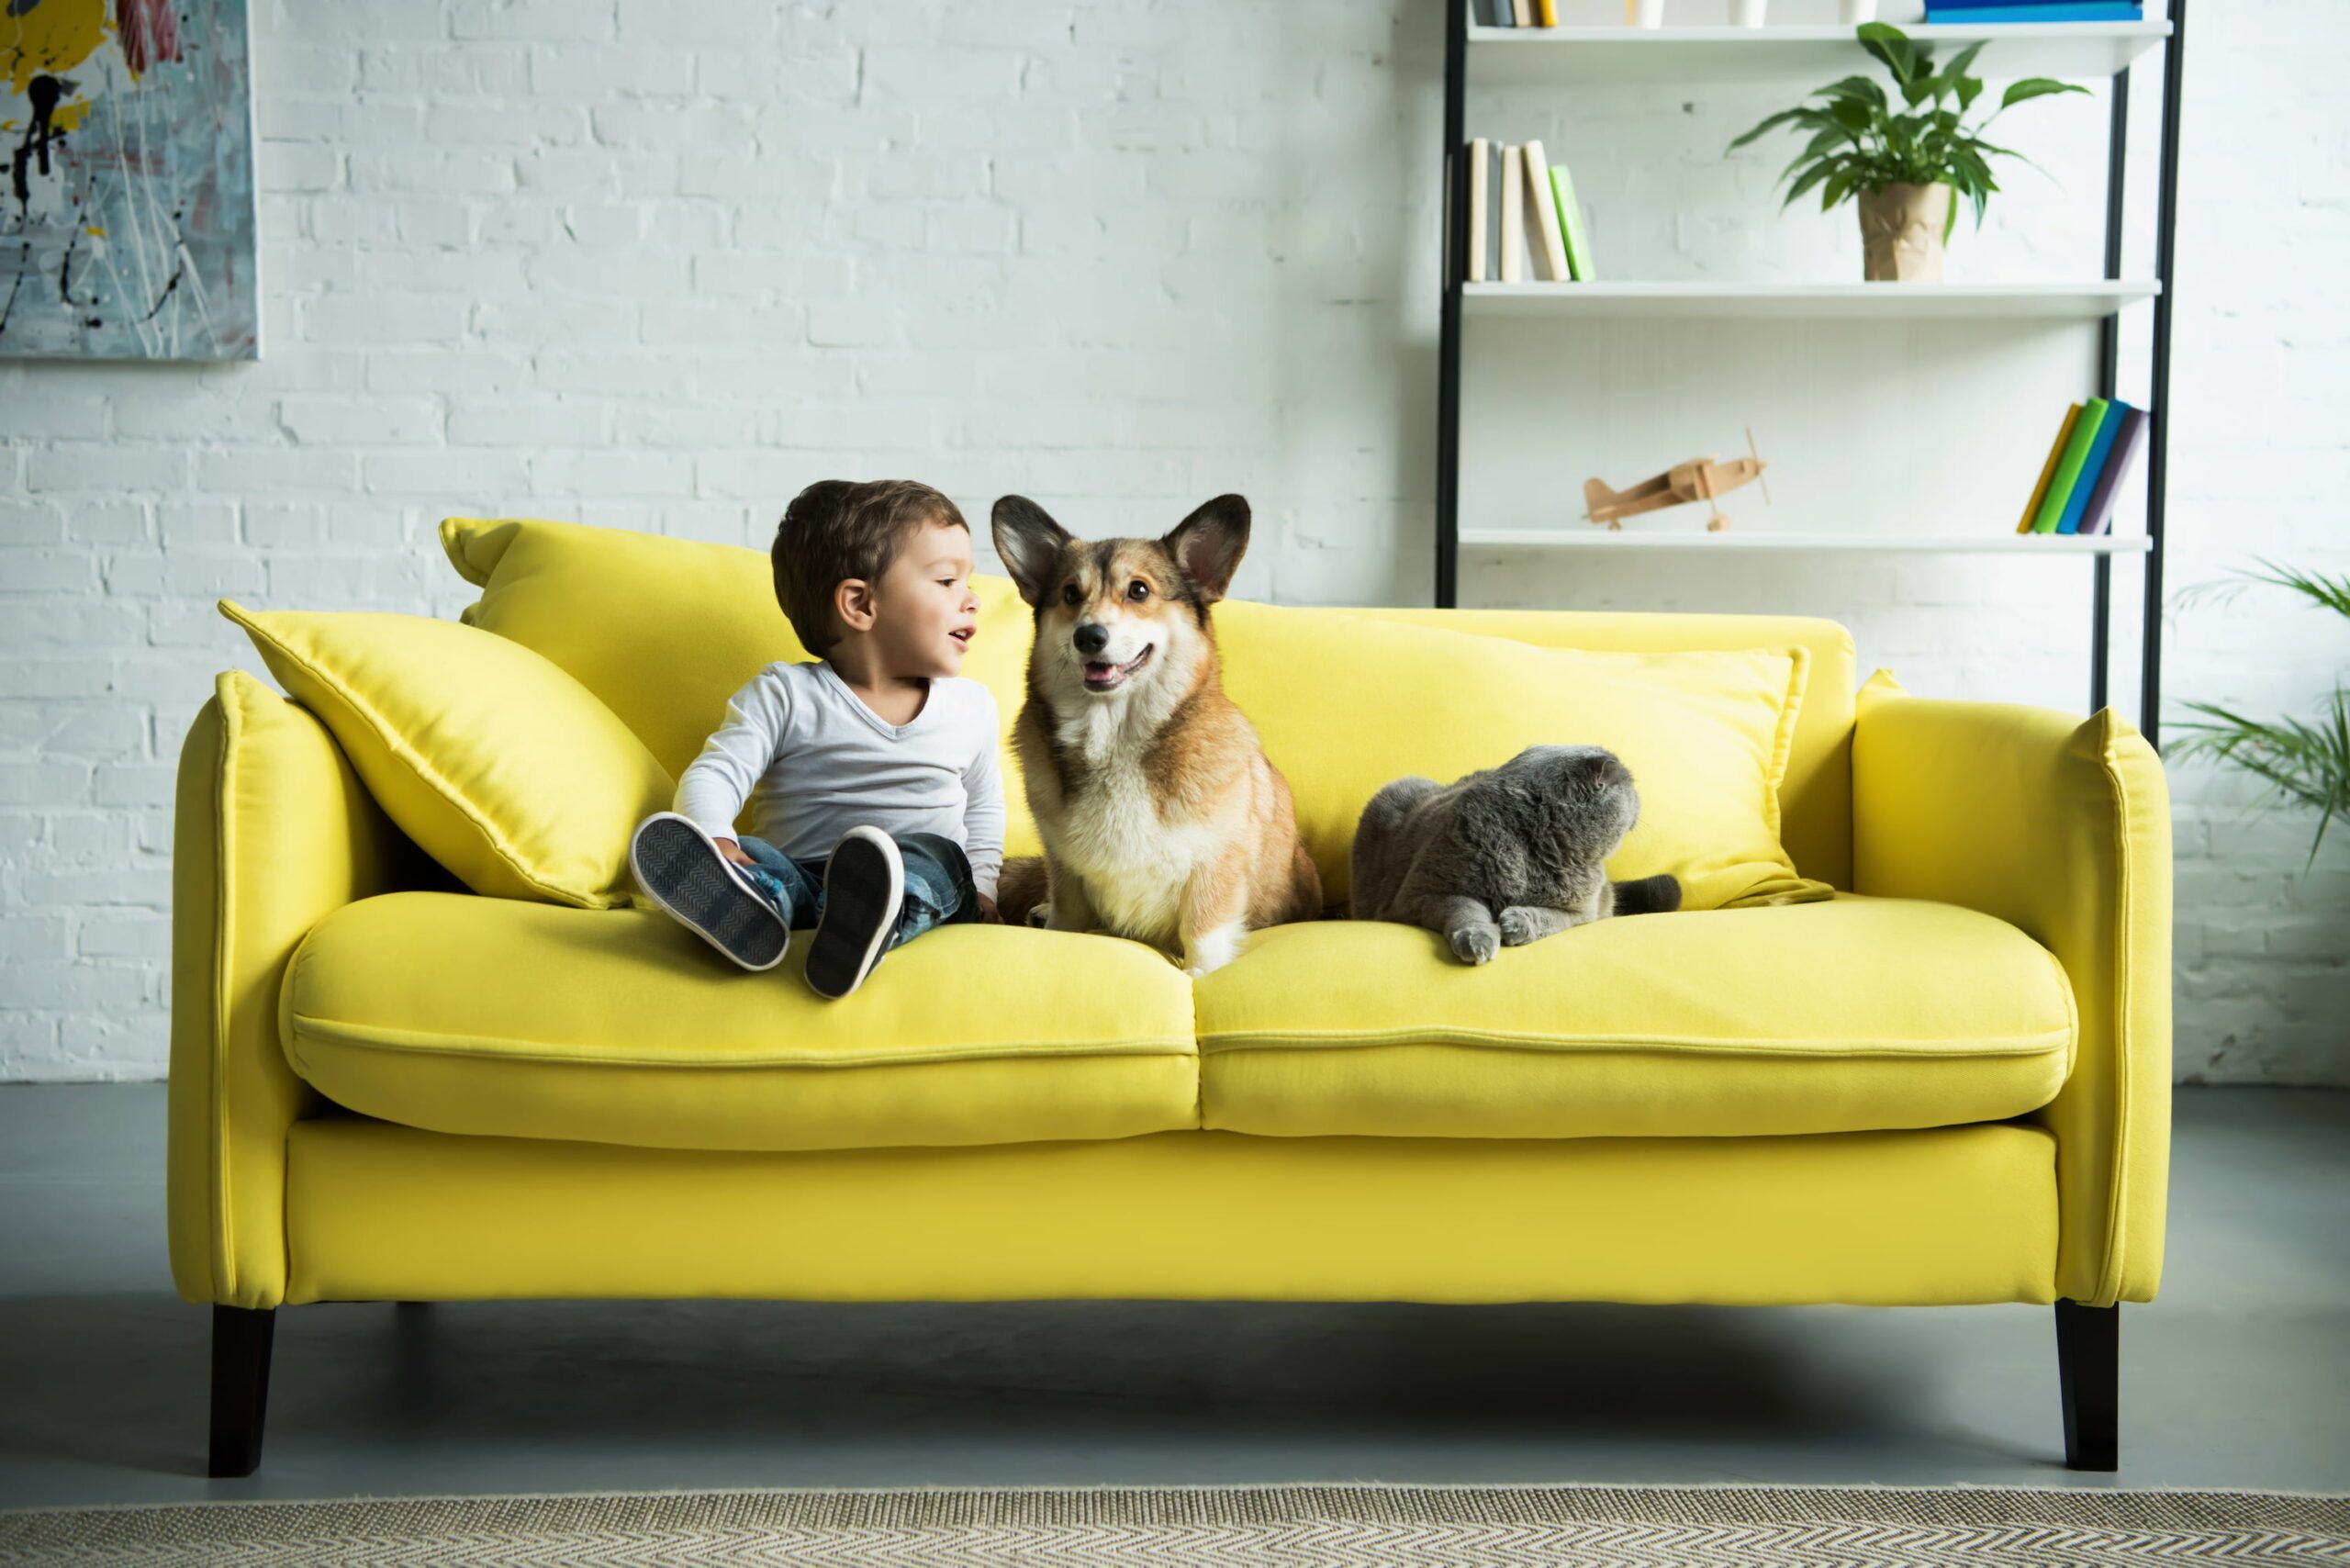 Kind, Hund und Katze sitzen ruhig auf einem gelben Sofa und verursachen keine Flecken